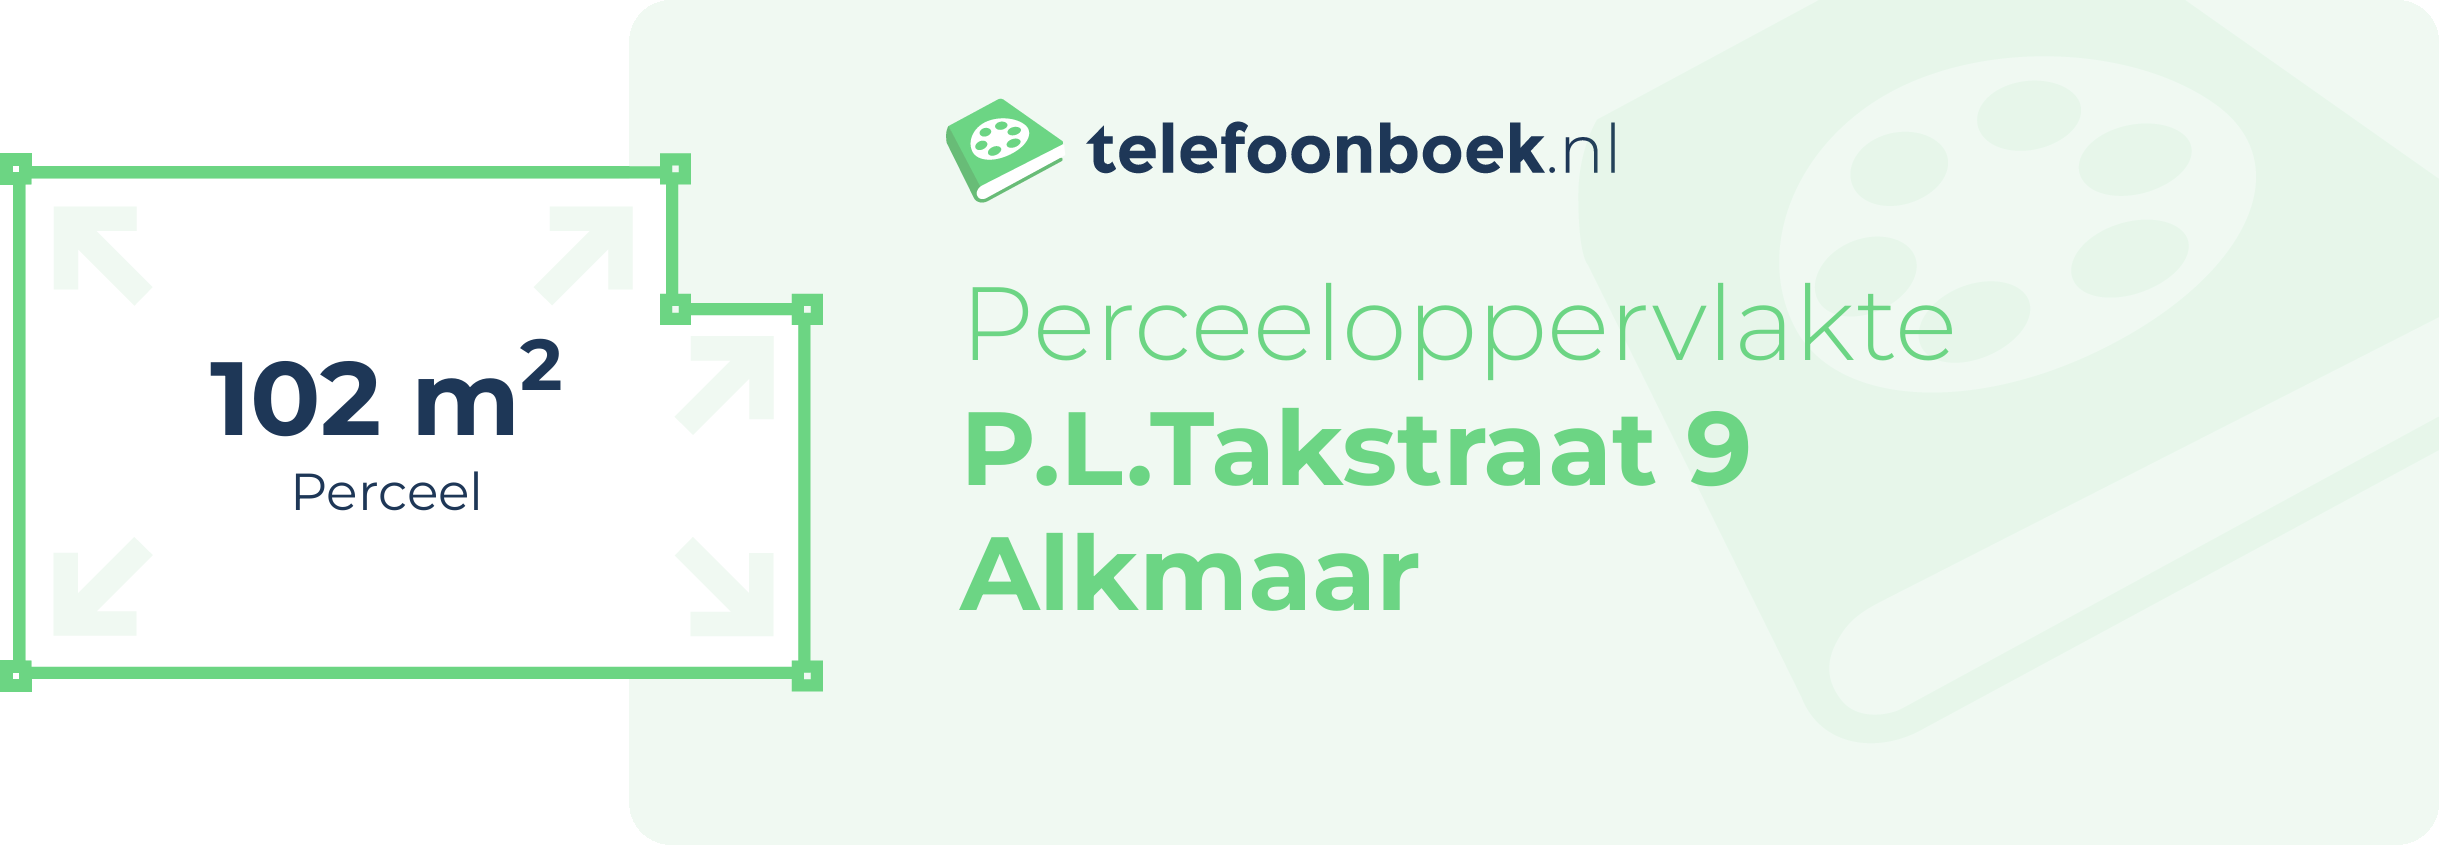 Perceeloppervlakte P.L.Takstraat 9 Alkmaar